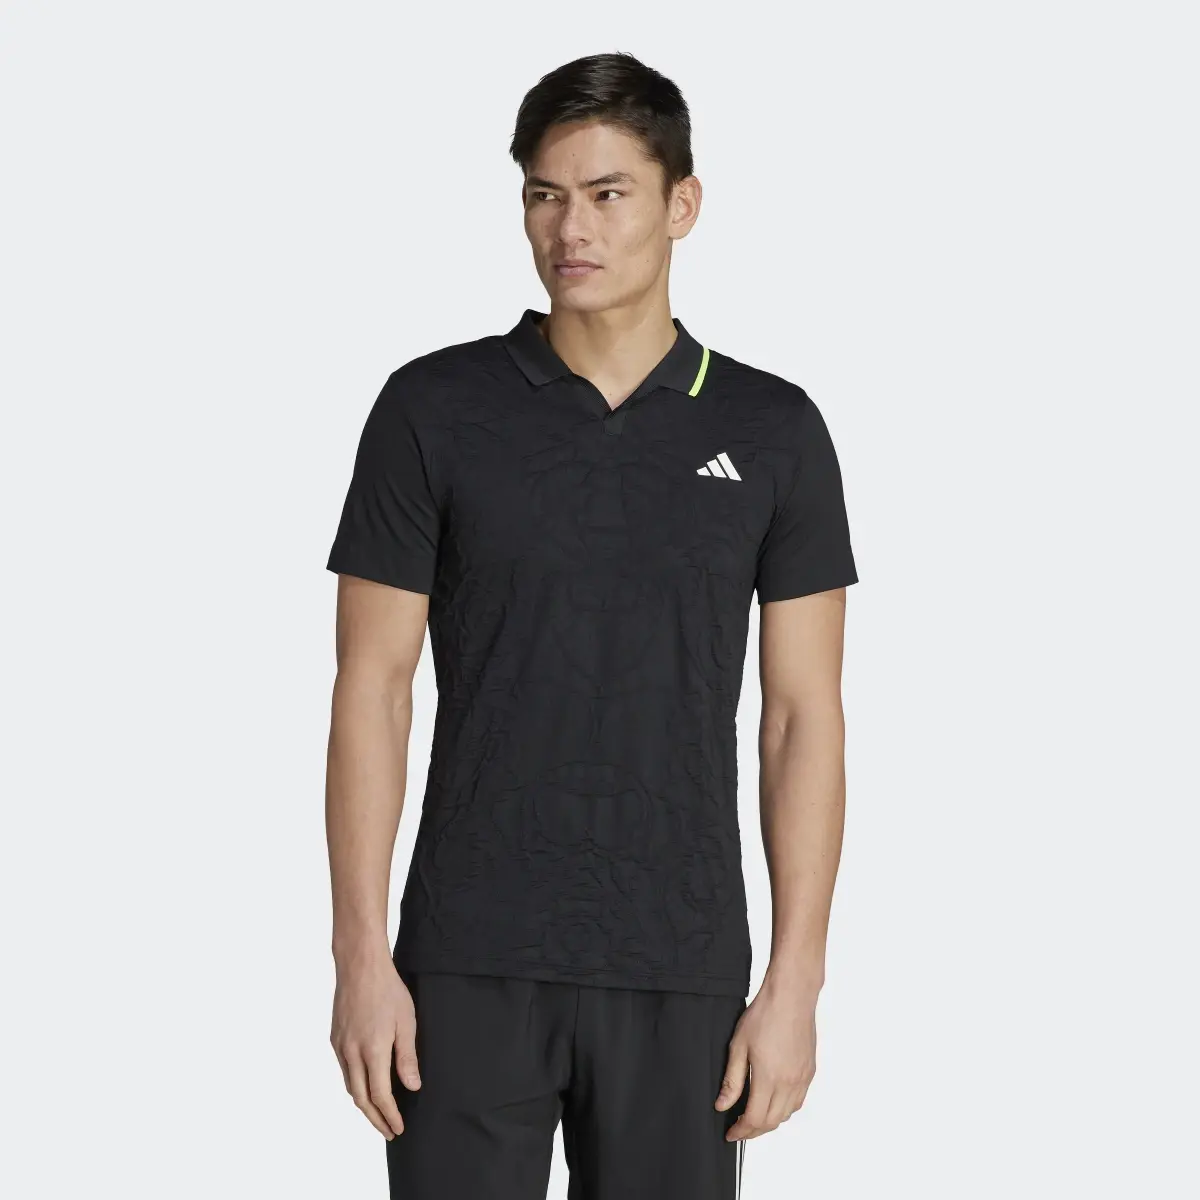 Adidas AEROREADY FreeLift Pro Tennis Polo Shirt. 2